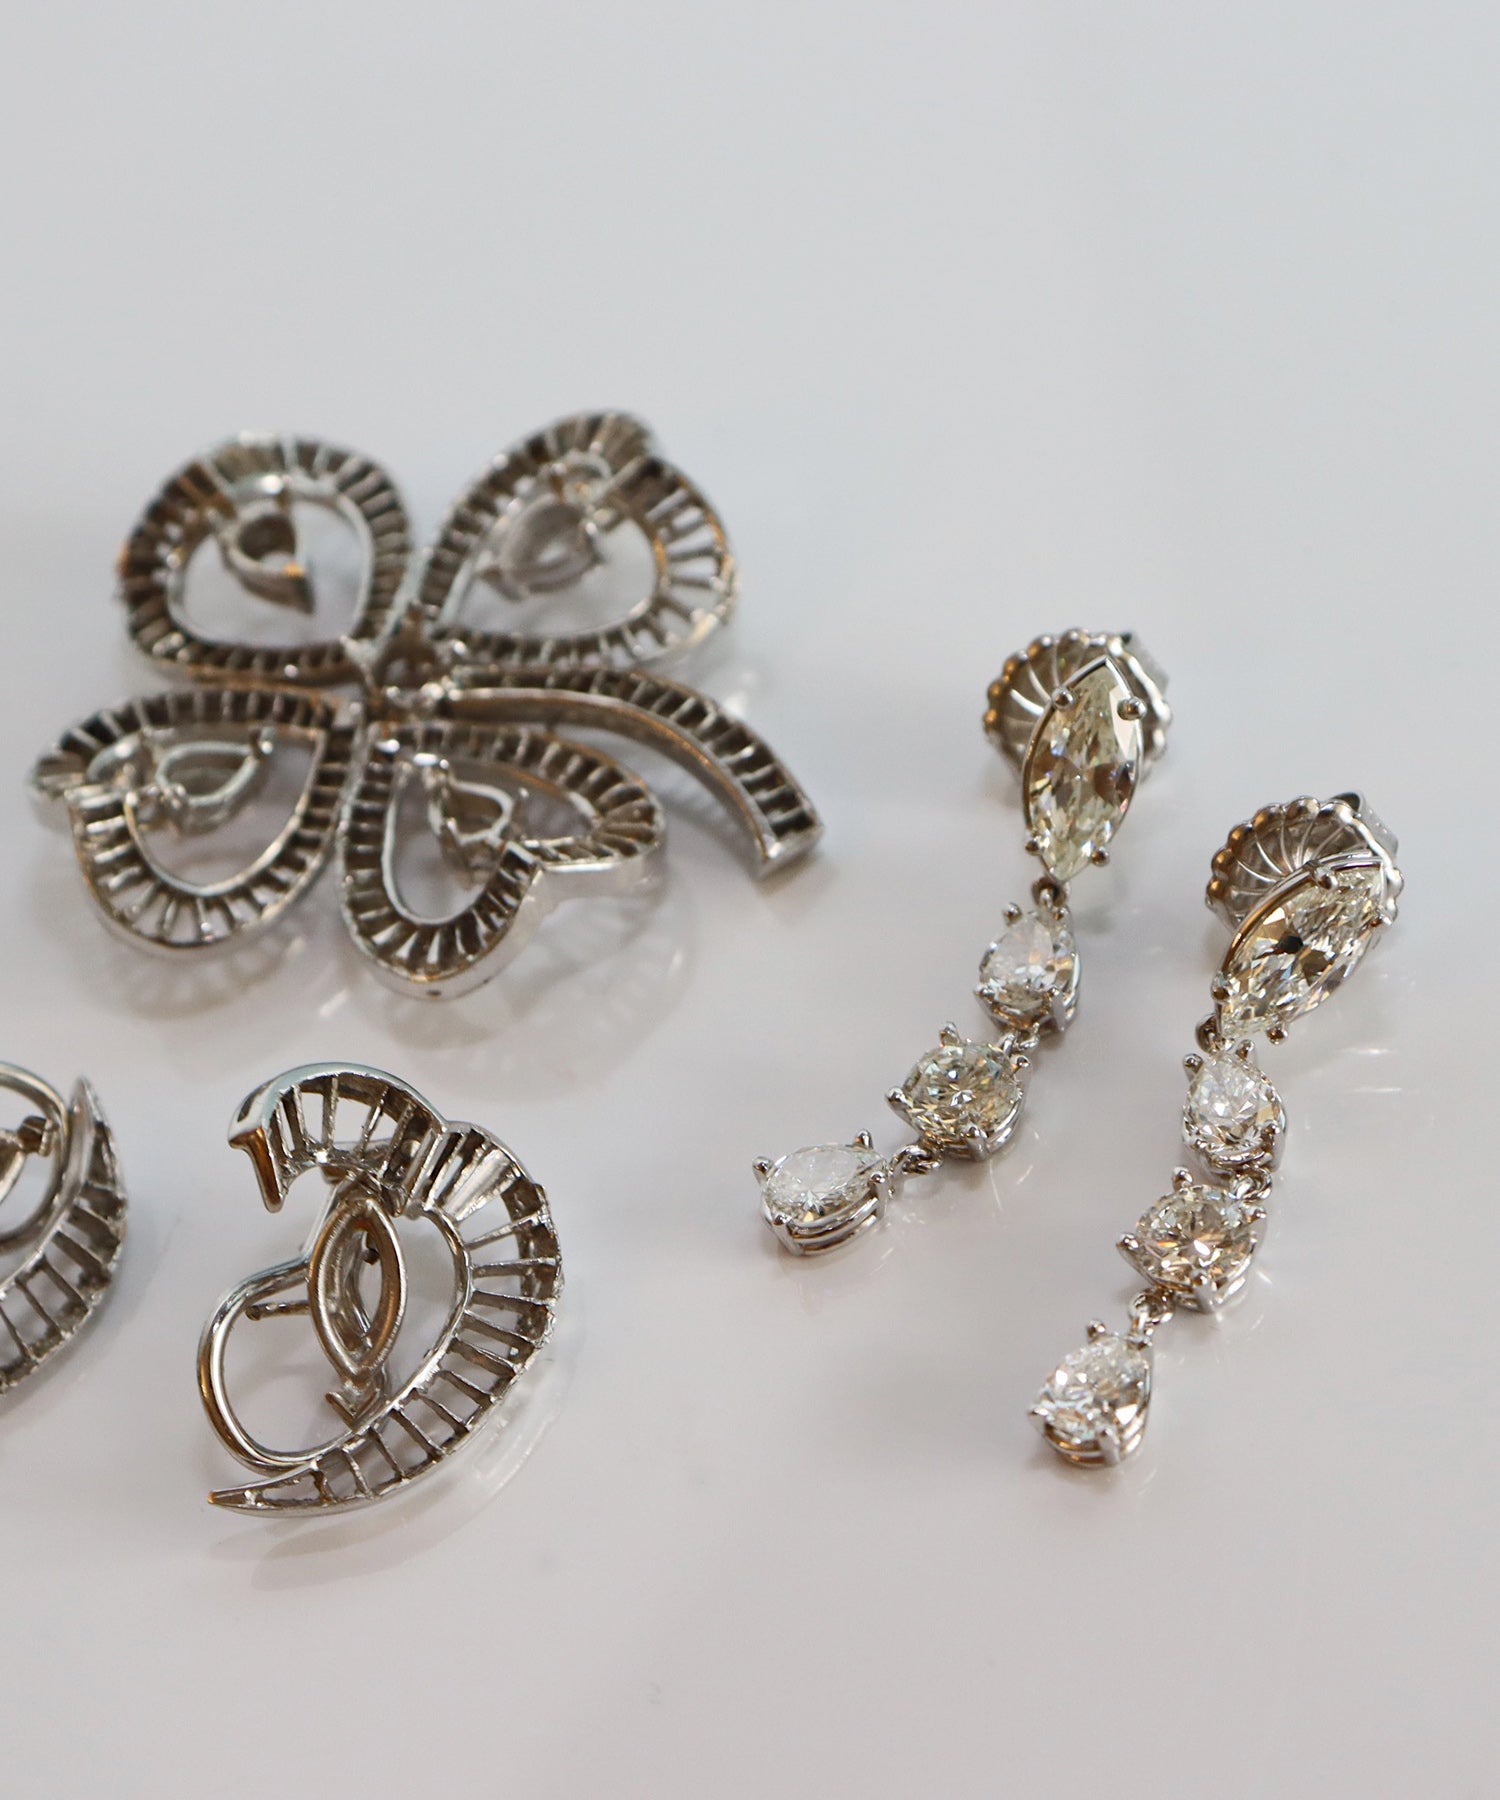 Custom Design diamonds re-set in new earrings